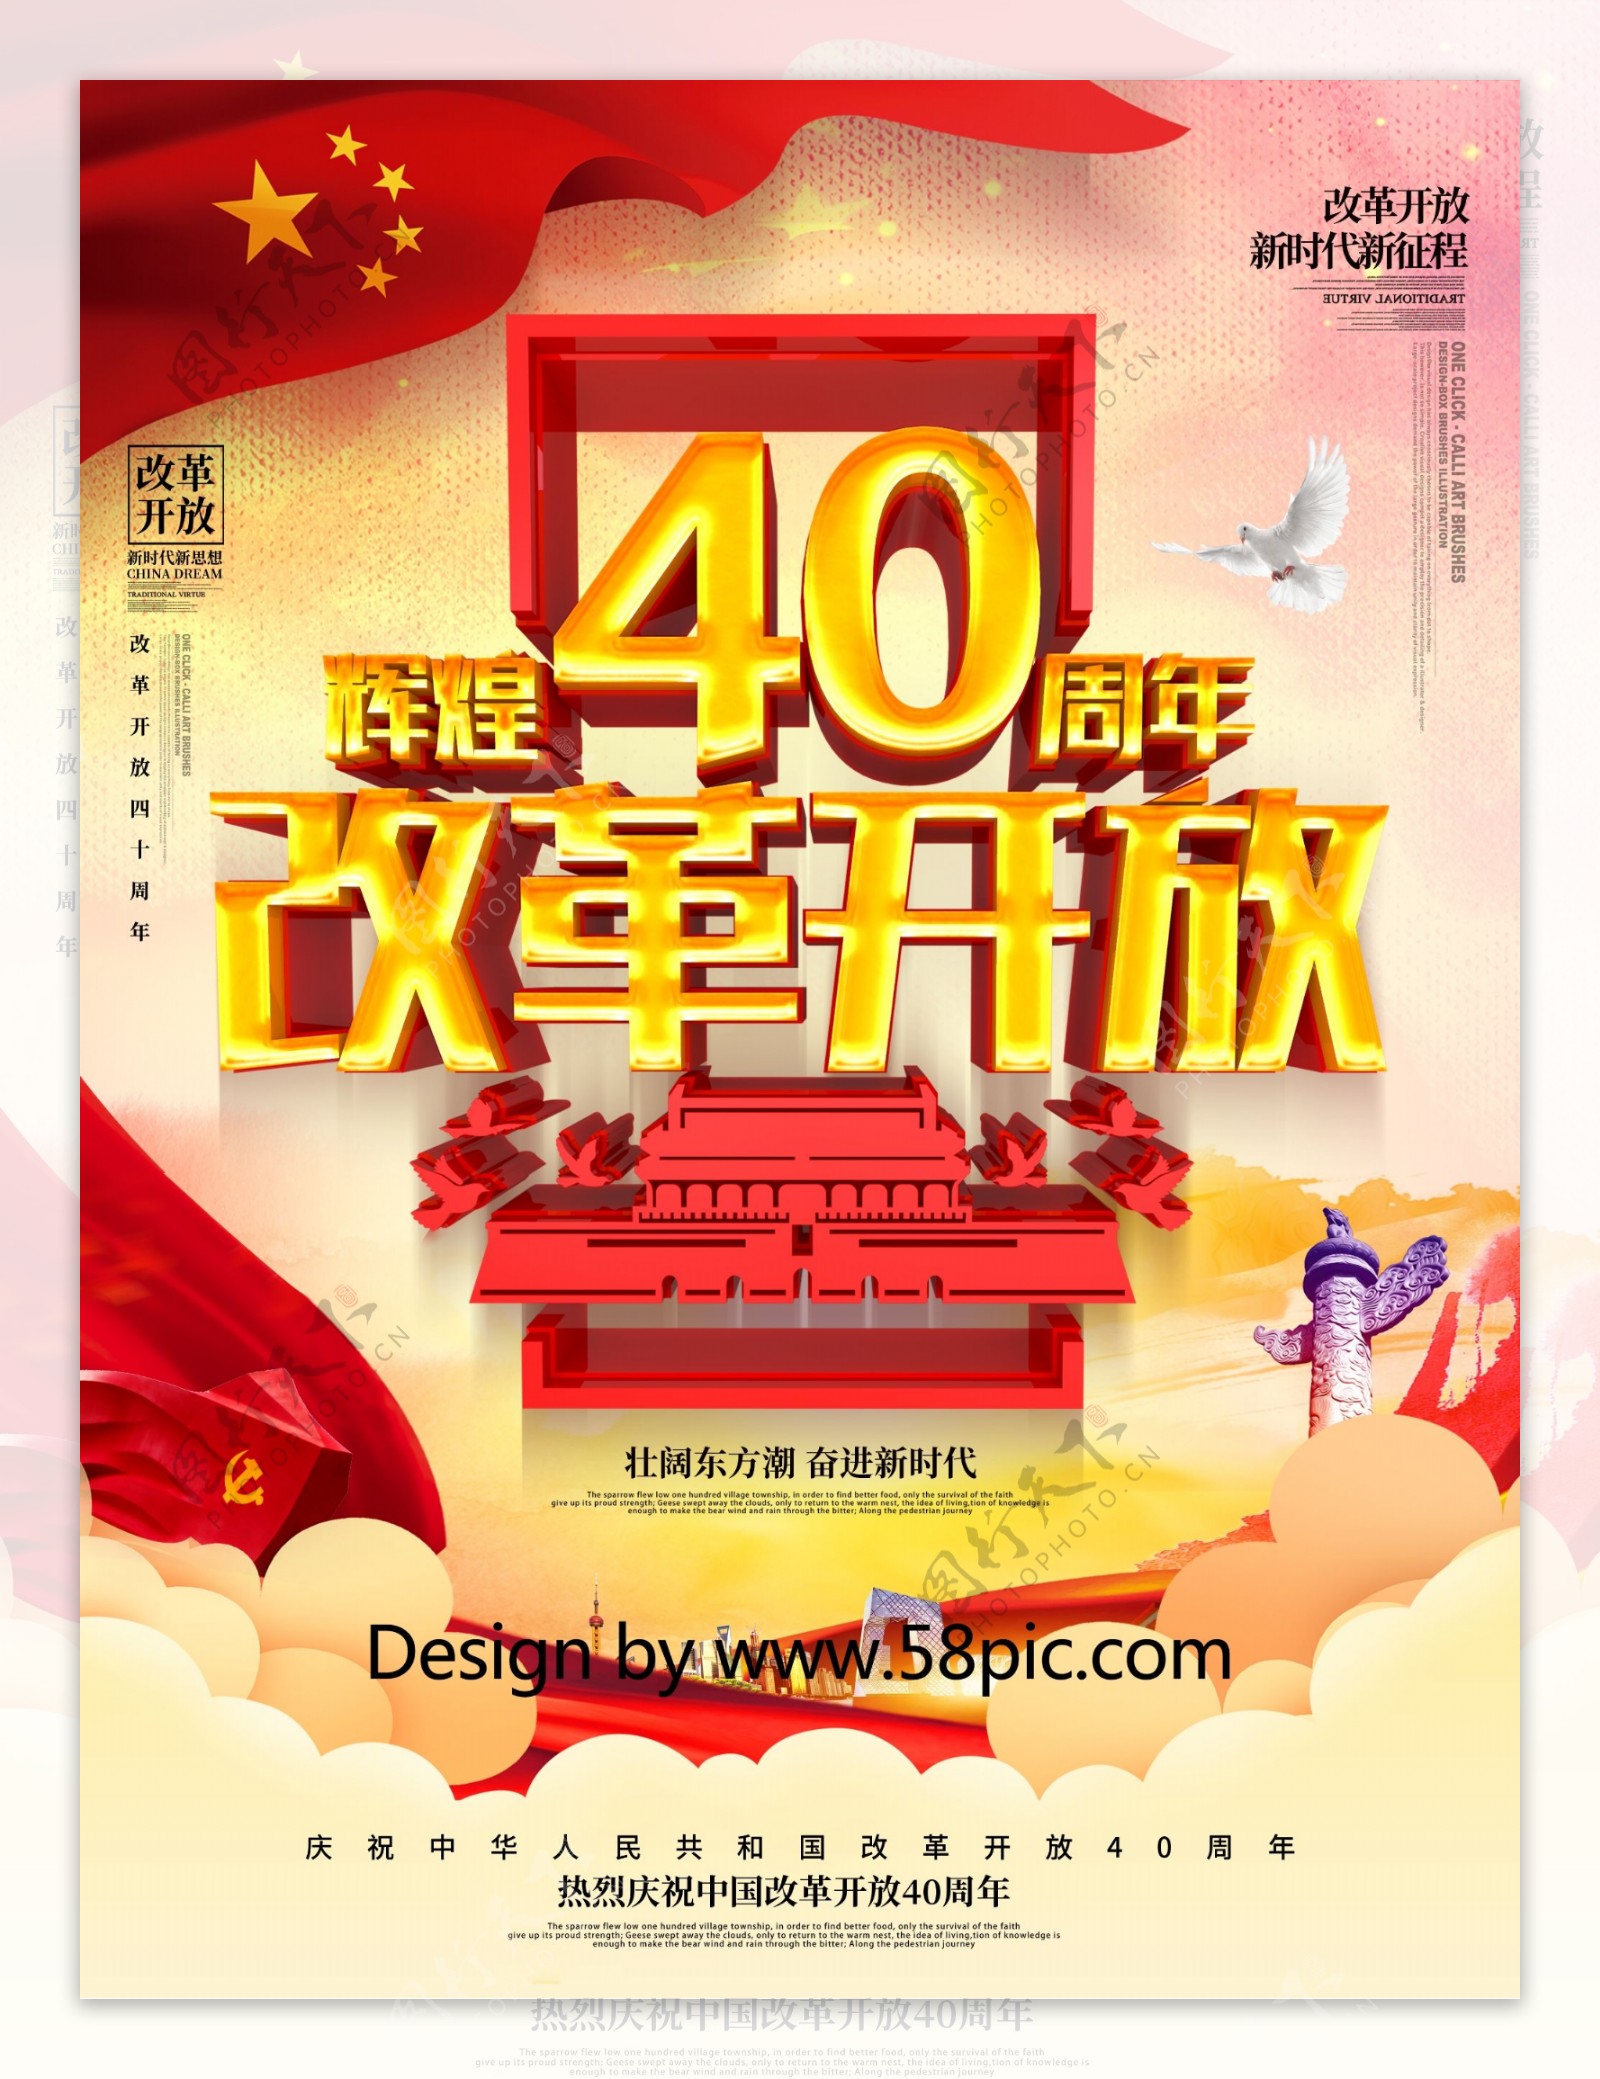 纪念中国改革开放40周年党建系列内容展板